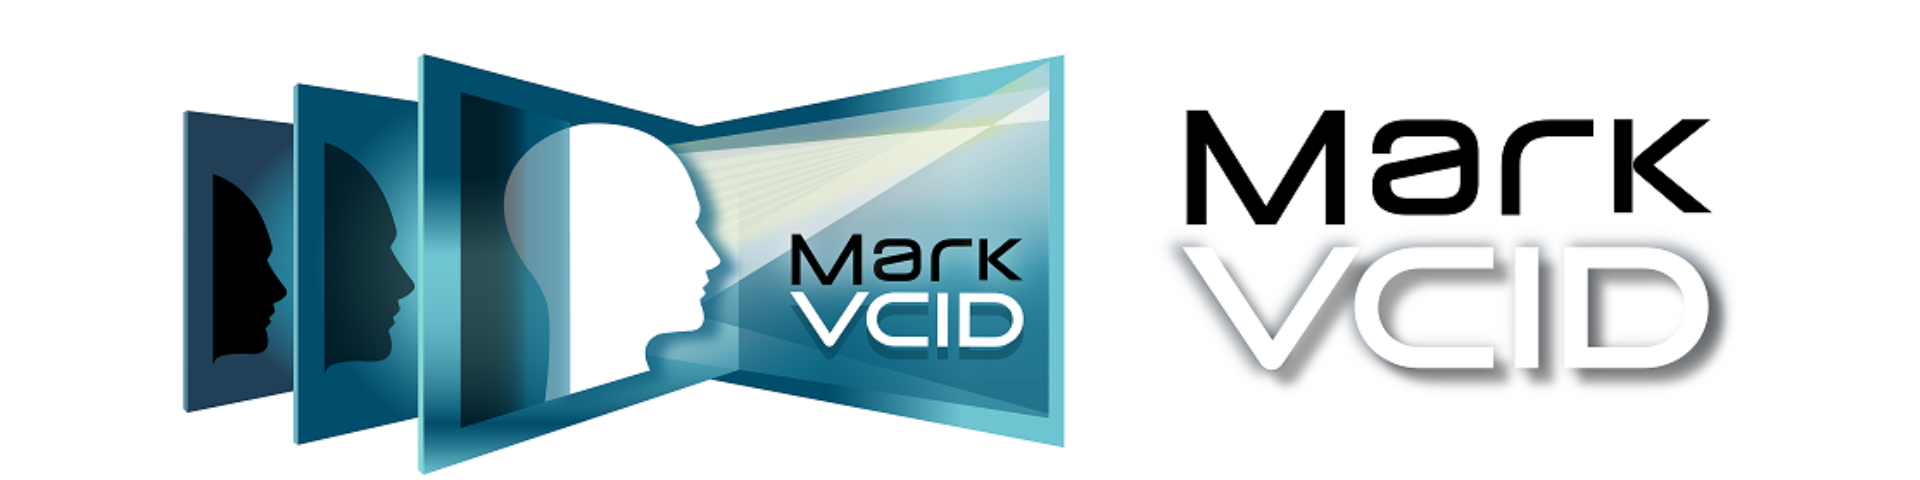 MARK_VCID_LOGO_Linked_To-Website